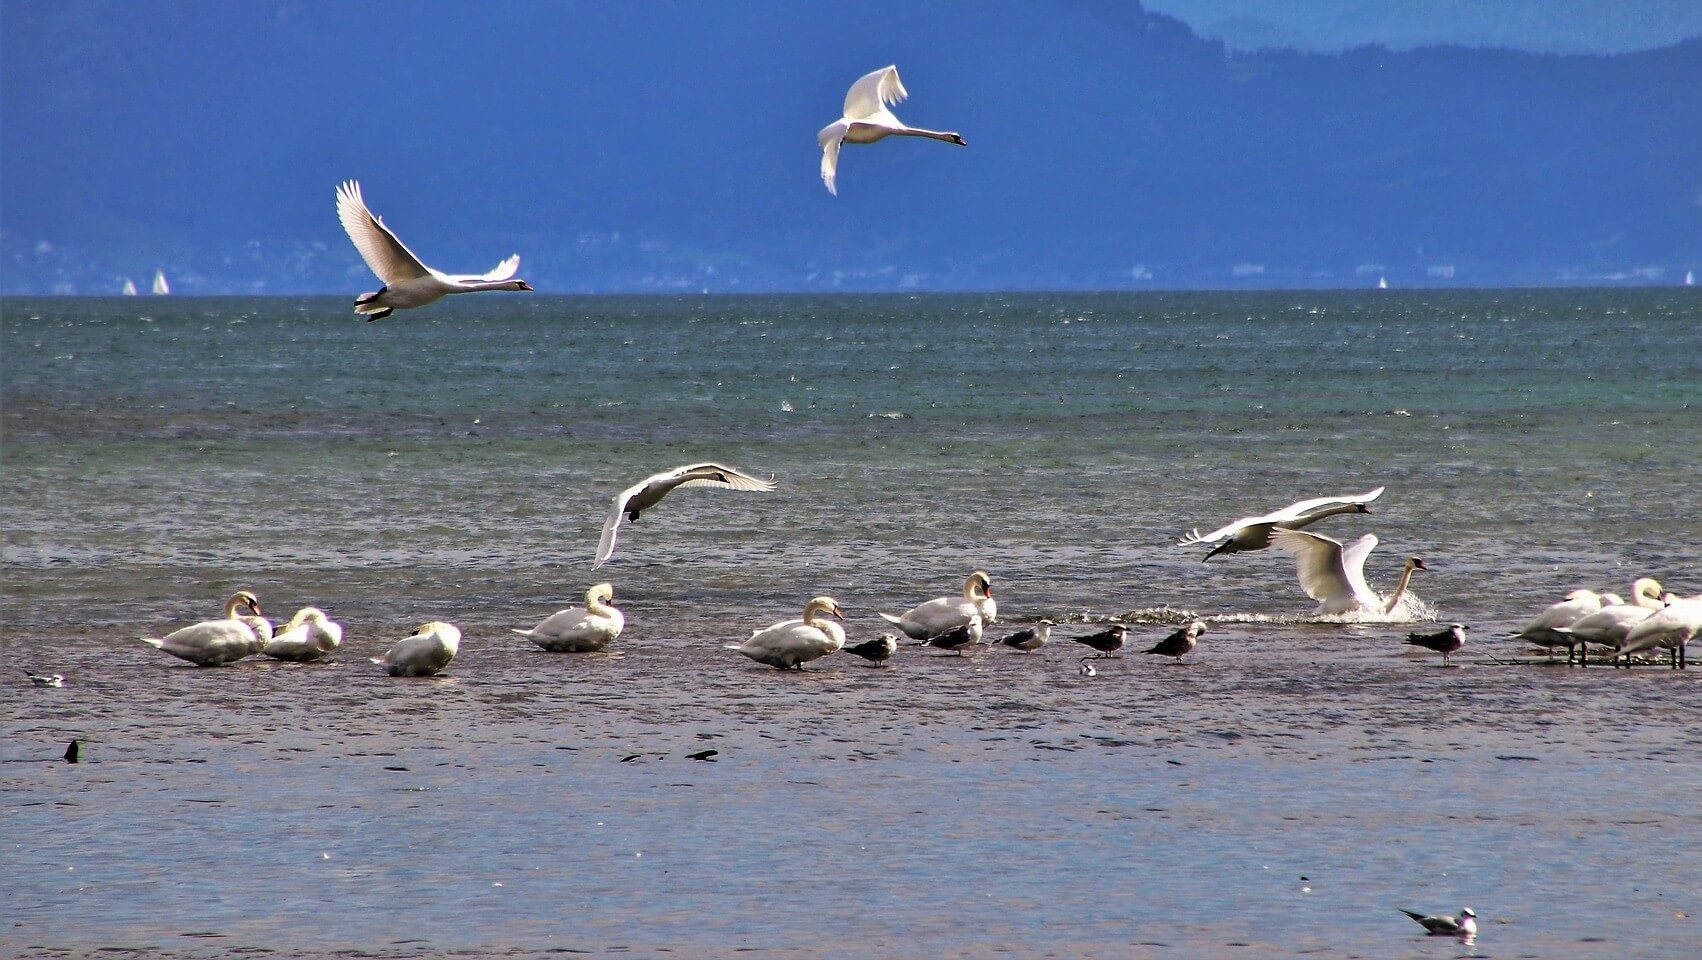 Birds flocking around a body of water.